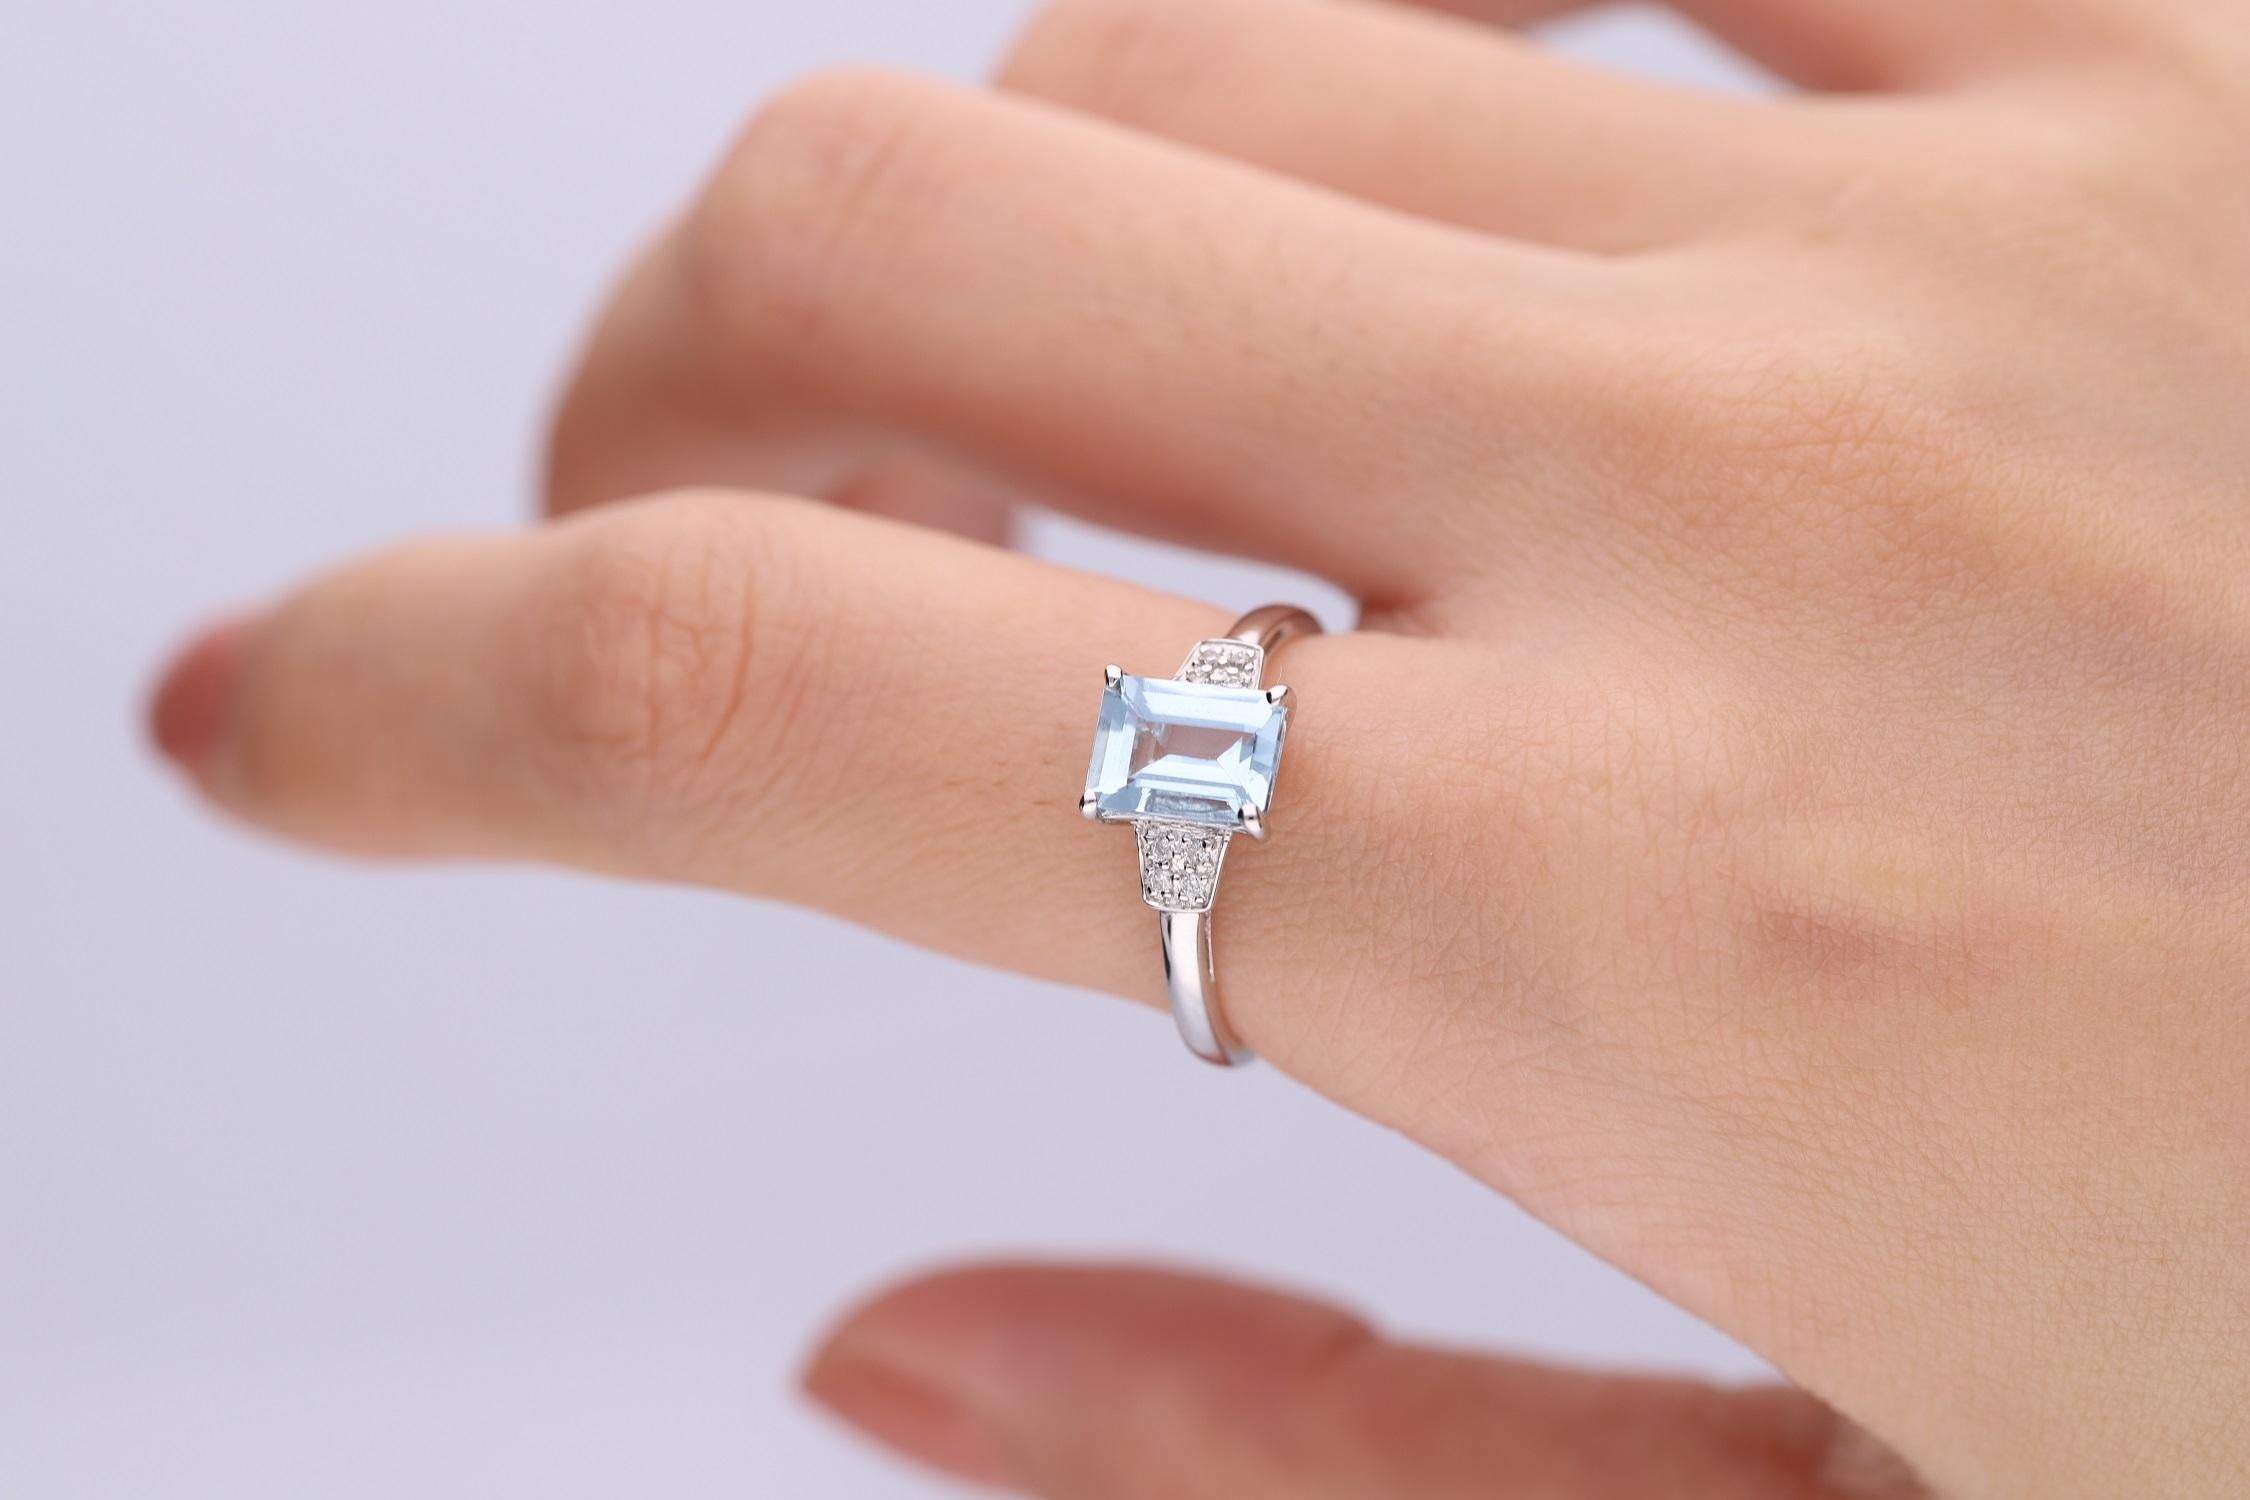 Mit diesem exquisiten Ring von Gin and Grace verleihen Sie Ihrem formellen Outfit den letzten Schliff. Der zentrale Stein aus echtem Aquamarin wiegt über ein Karat und ist damit eine sensationelle Ergänzung des Rings. Acht wunderschöne, klare